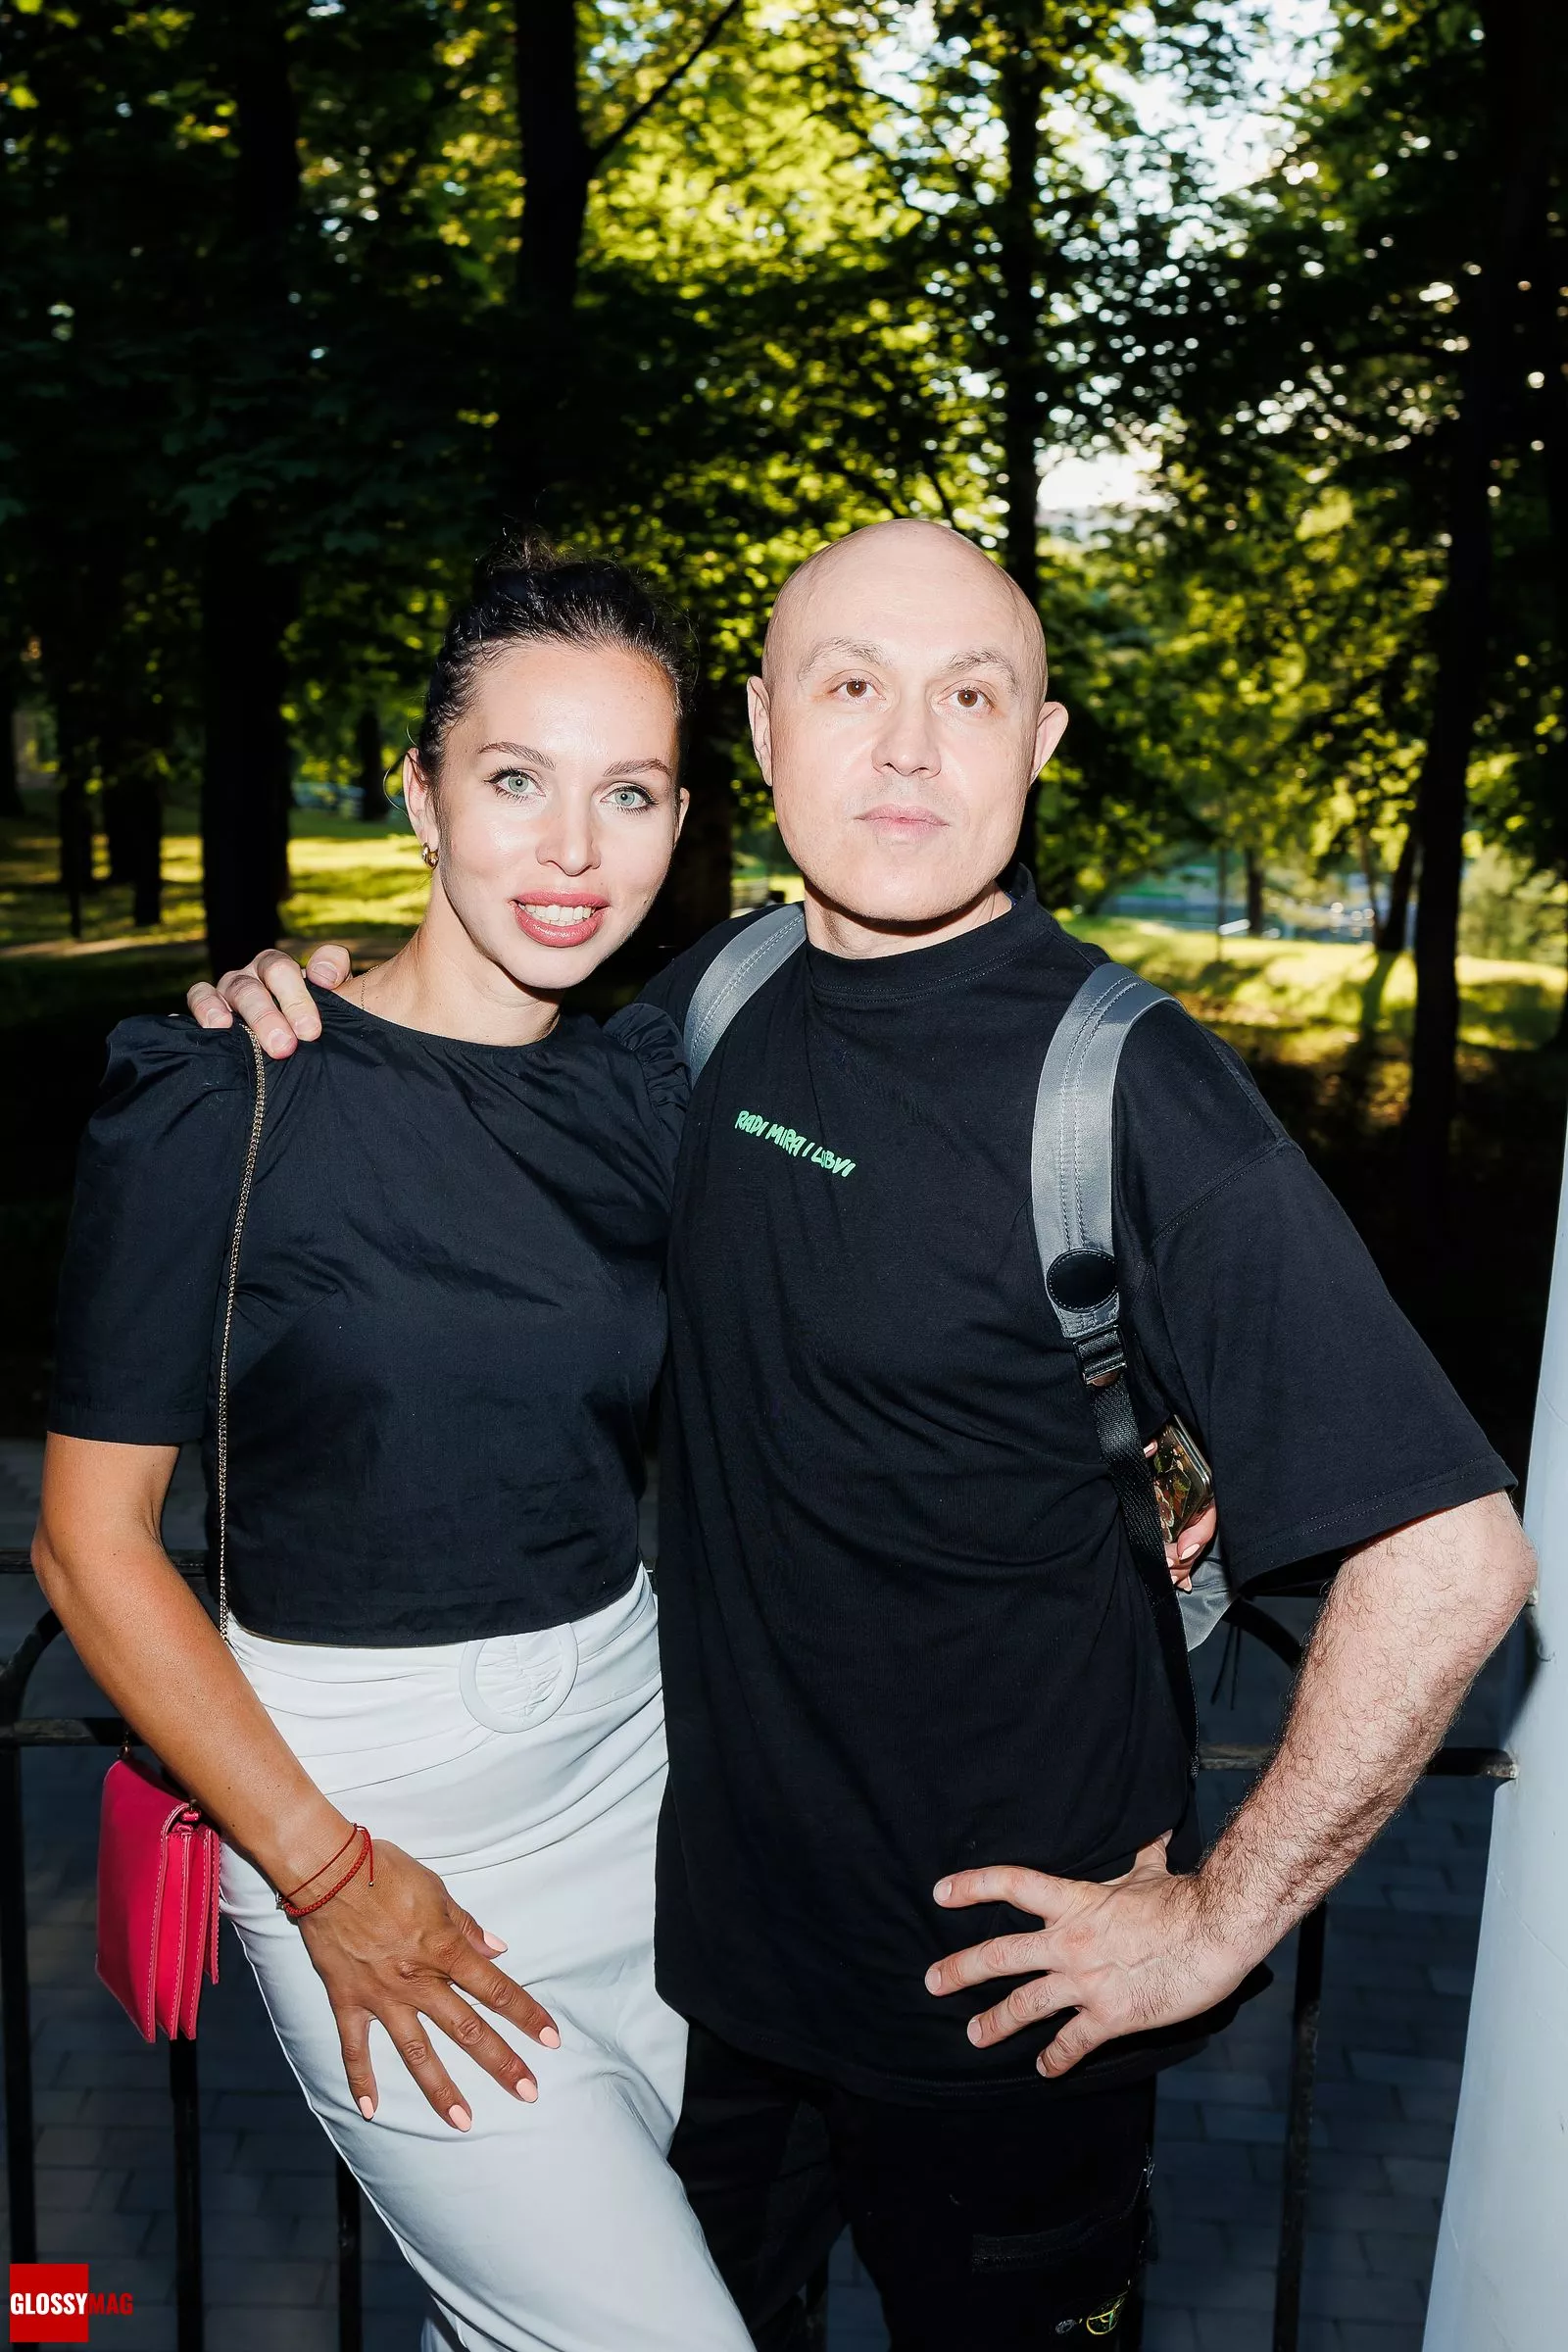 Синиша Лазаревич с гостьей вечера на праздновании дня рождения Полины Аскери в музее-усадьбе Люблино, 12 июля 2022 г.